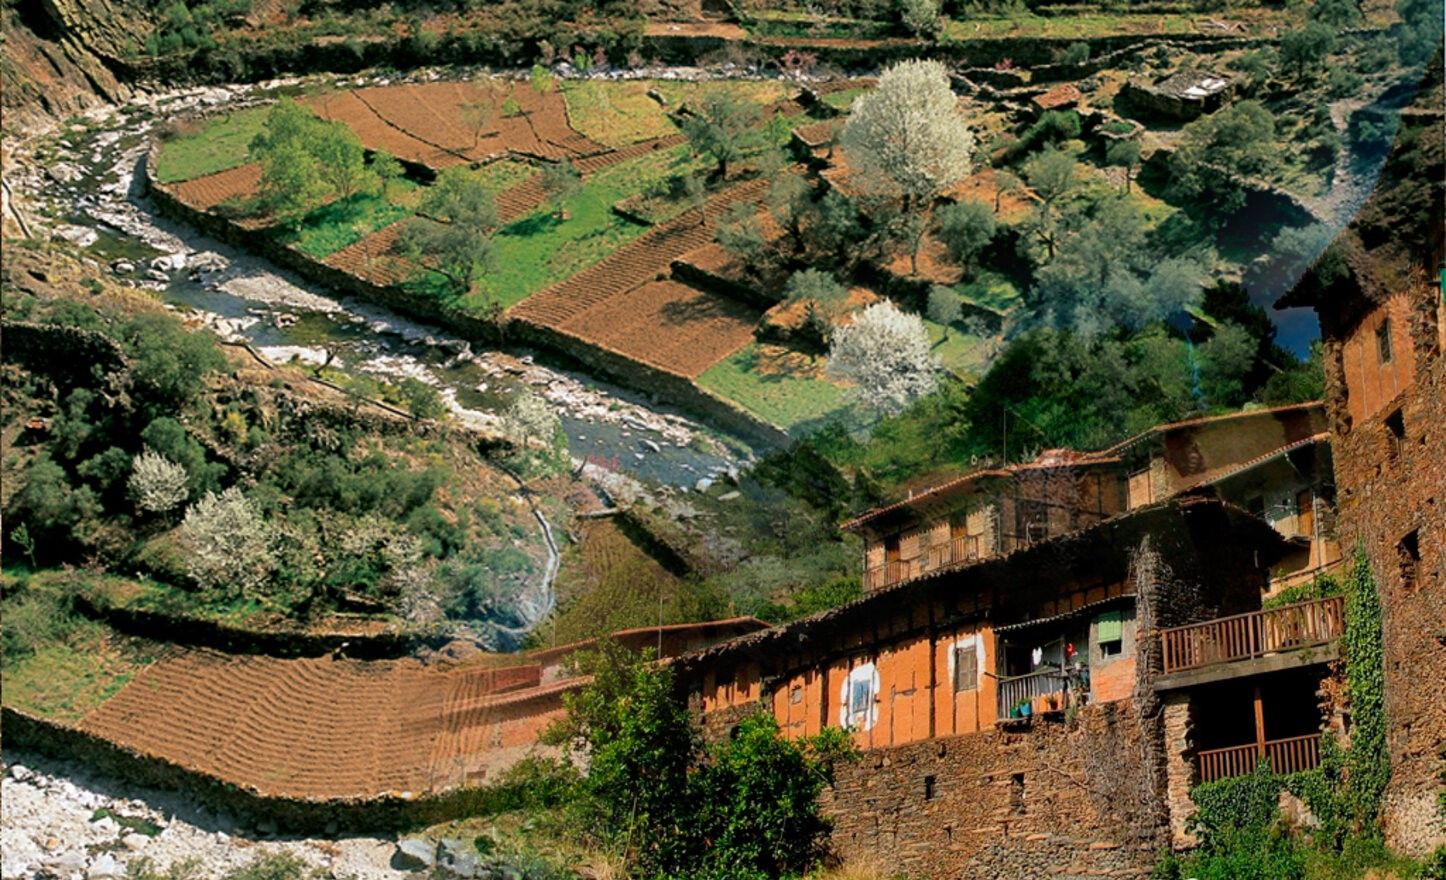 Imagen promocional del proyecto, de la Diputación de Cáceres.